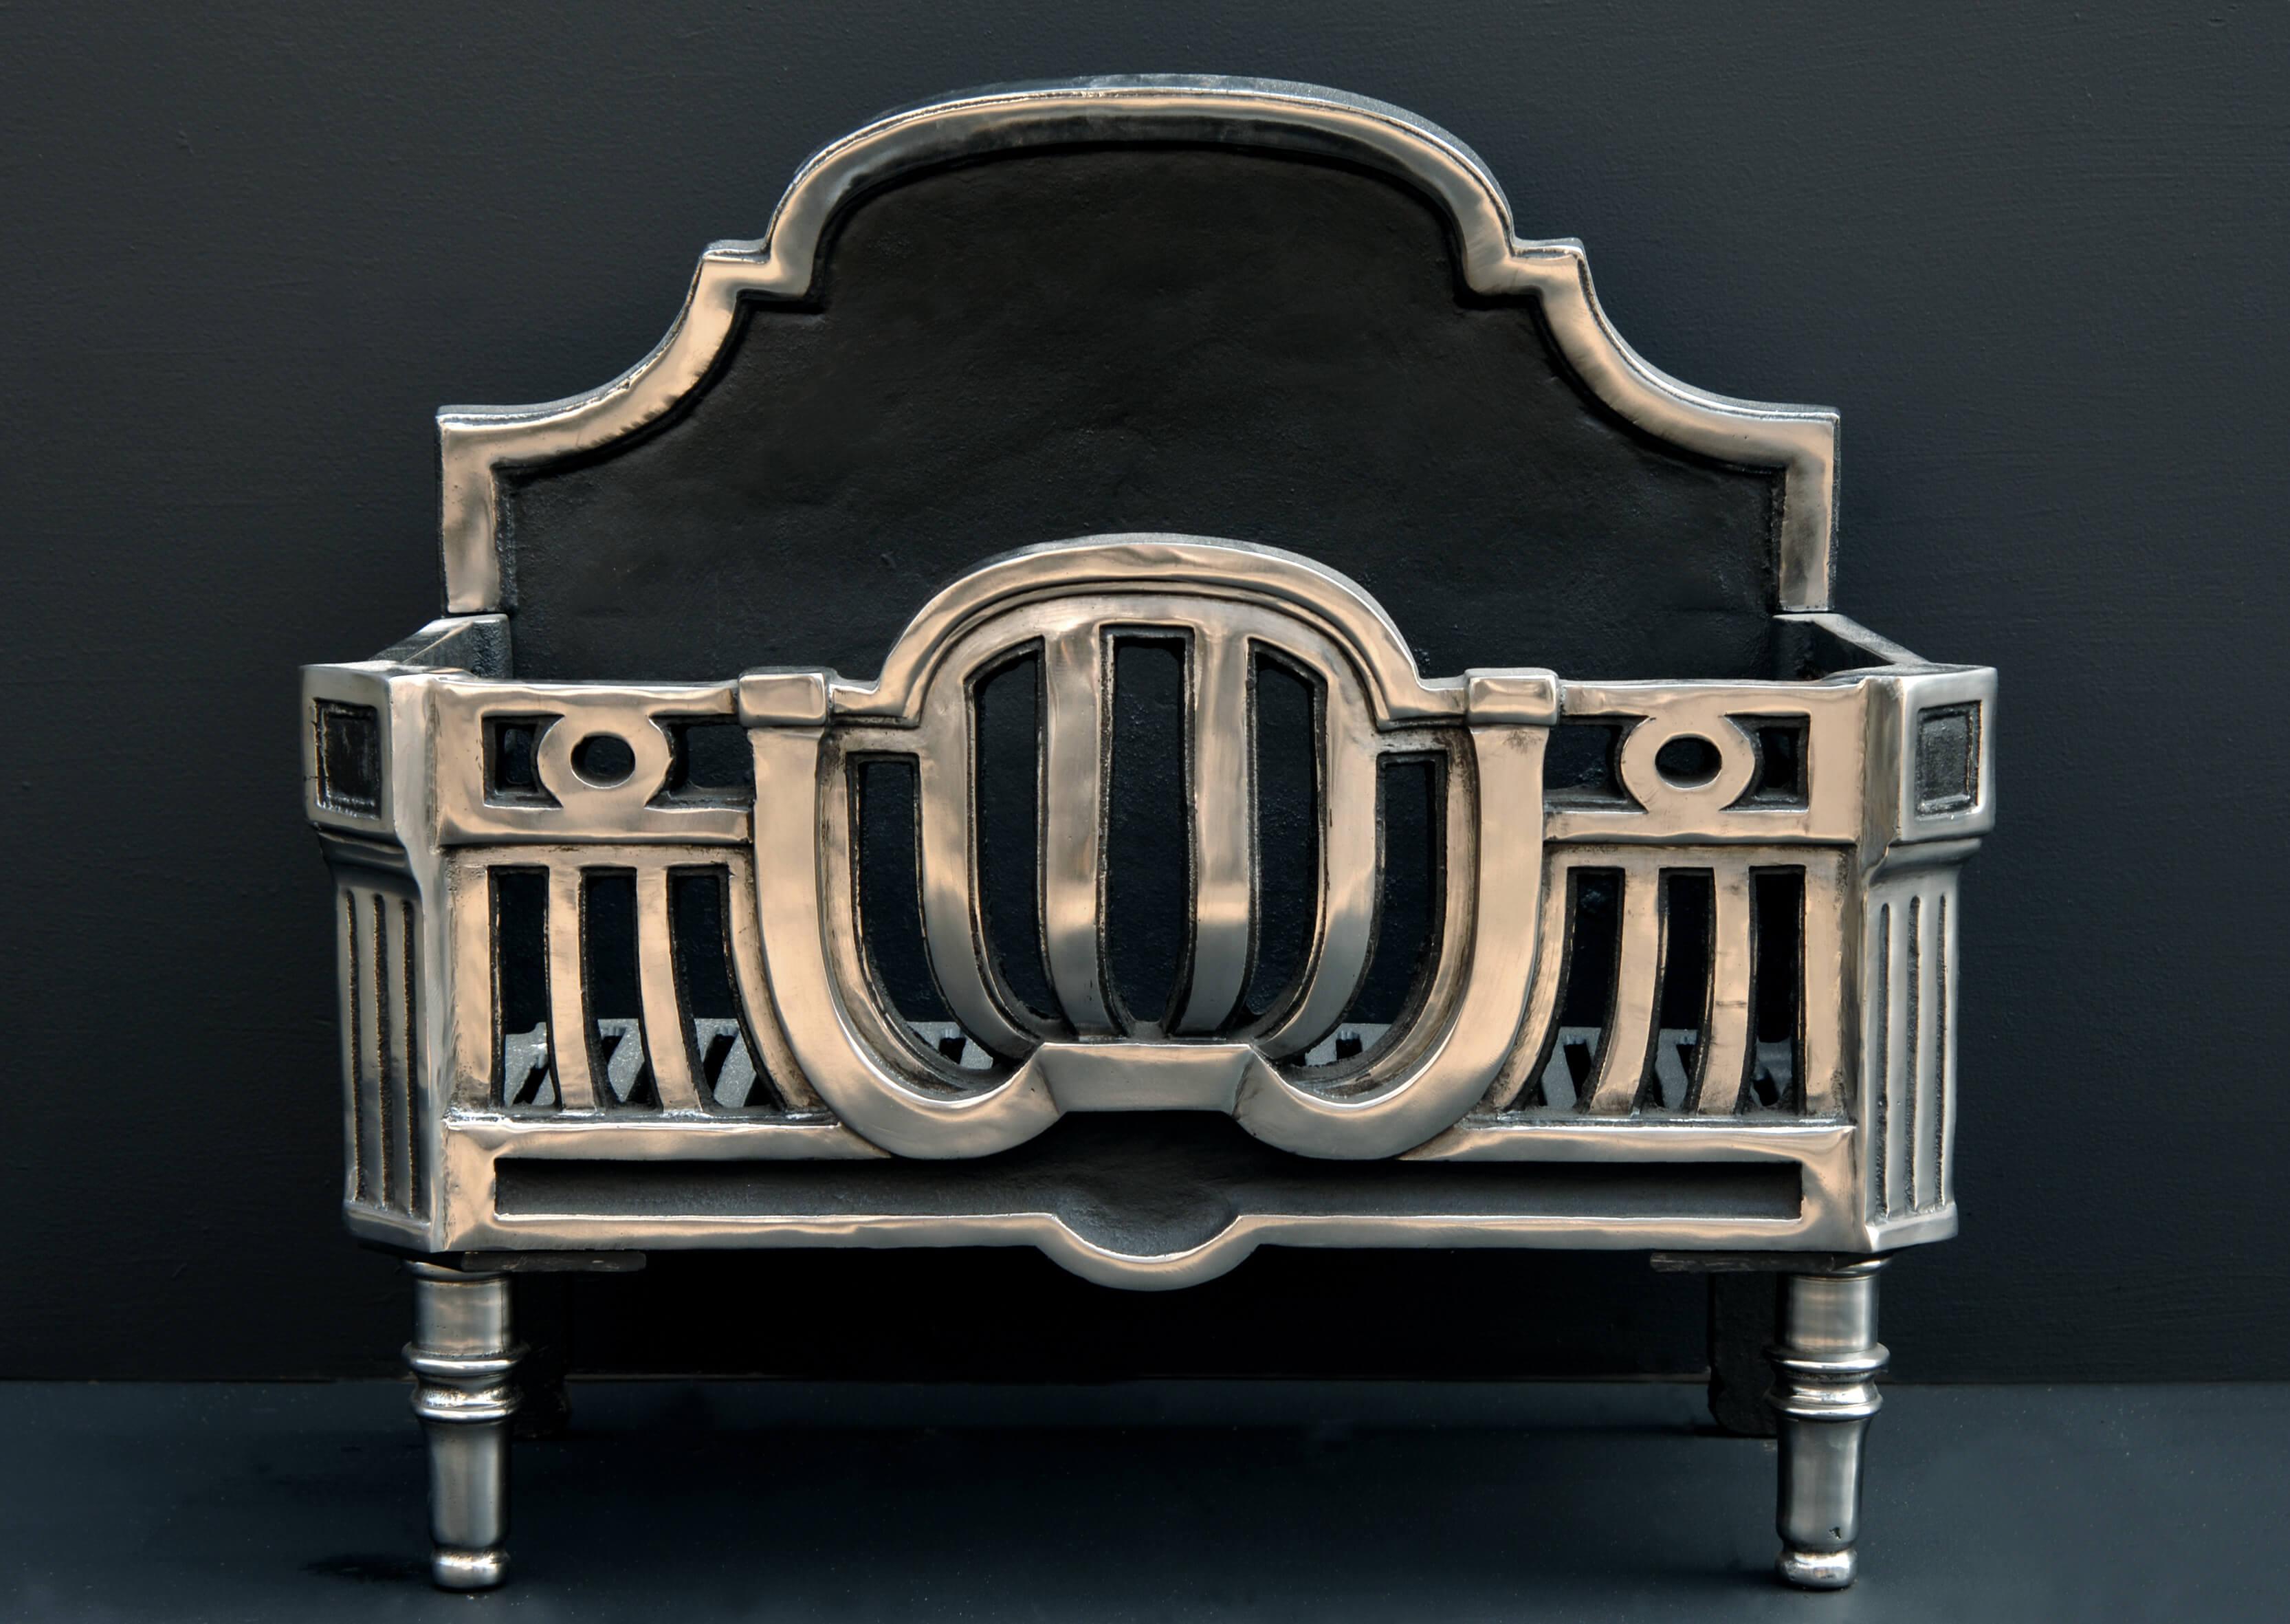 Polierter gusseiserner Kamin im Art-Deco-Stil, mit Rillen und Ringdesign auf der Vorderseite.

Maße: Breite vorne: 630 mm 24 ¾